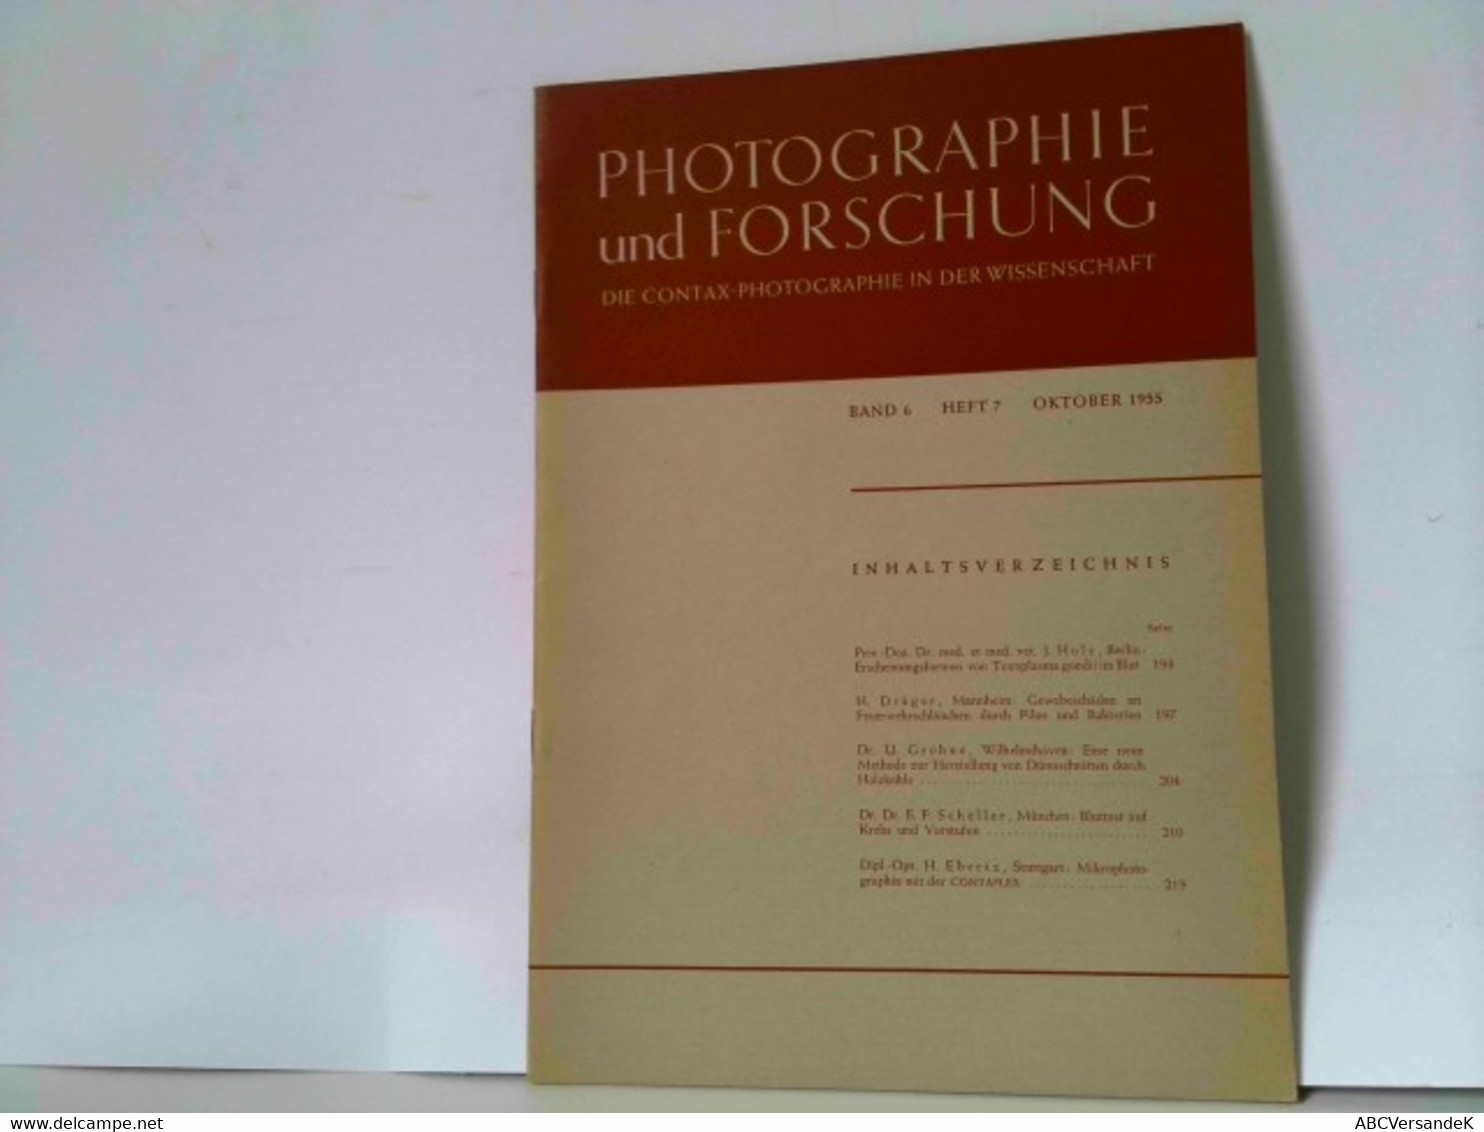 Photographie Und Forschung. Die Contax-Photographie In Der Wissenschaft. Band 6, Heft 7, Oktober 1955 - Photographie